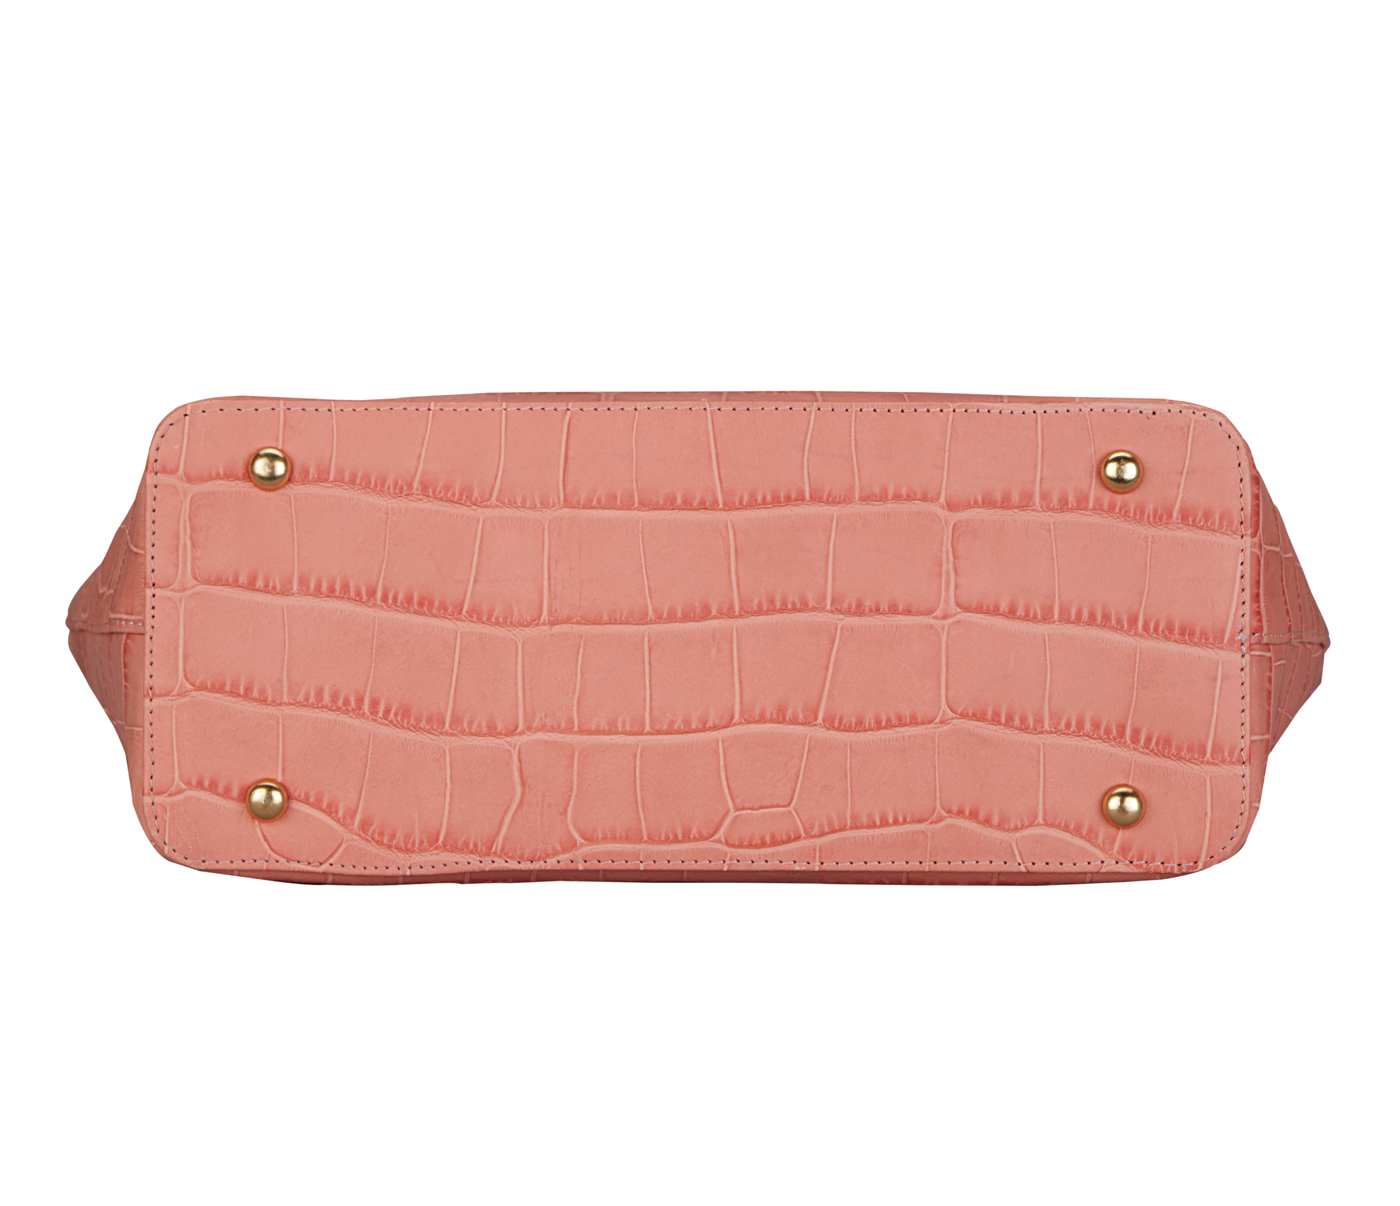 Handbag-Diana-Shoulder work bag in Genuine Leather - Pink.